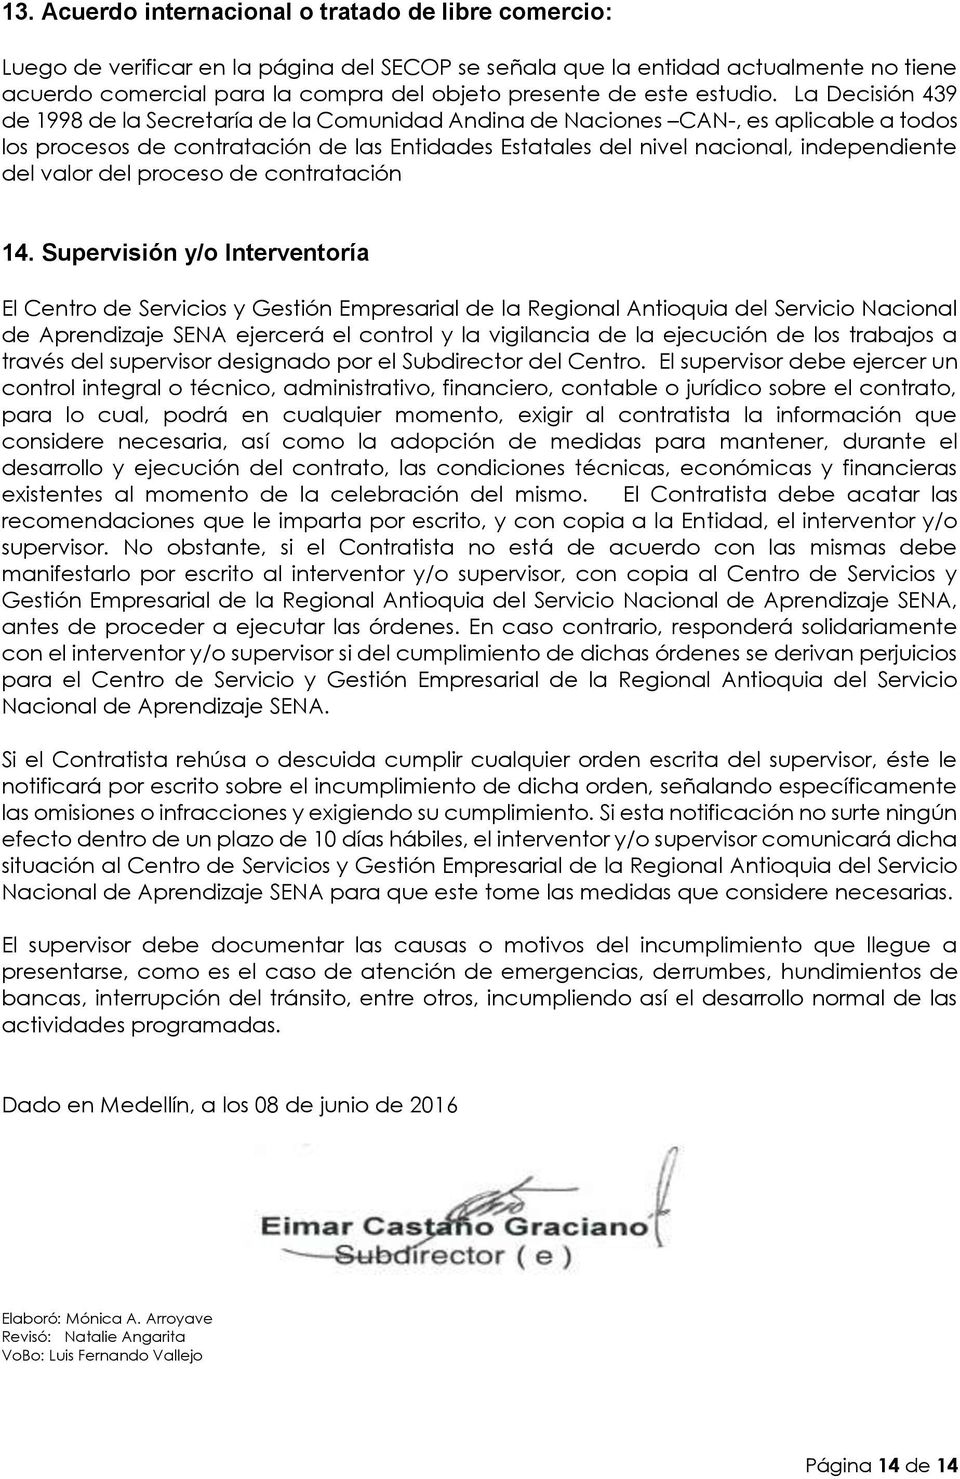 La Decisión 439 de 1998 de la Secretaría de la Comunidad Andina de Naciones CAN-, es aplicable a todos los procesos de contratación de las Entidades Estatales del nivel nacional, independiente del